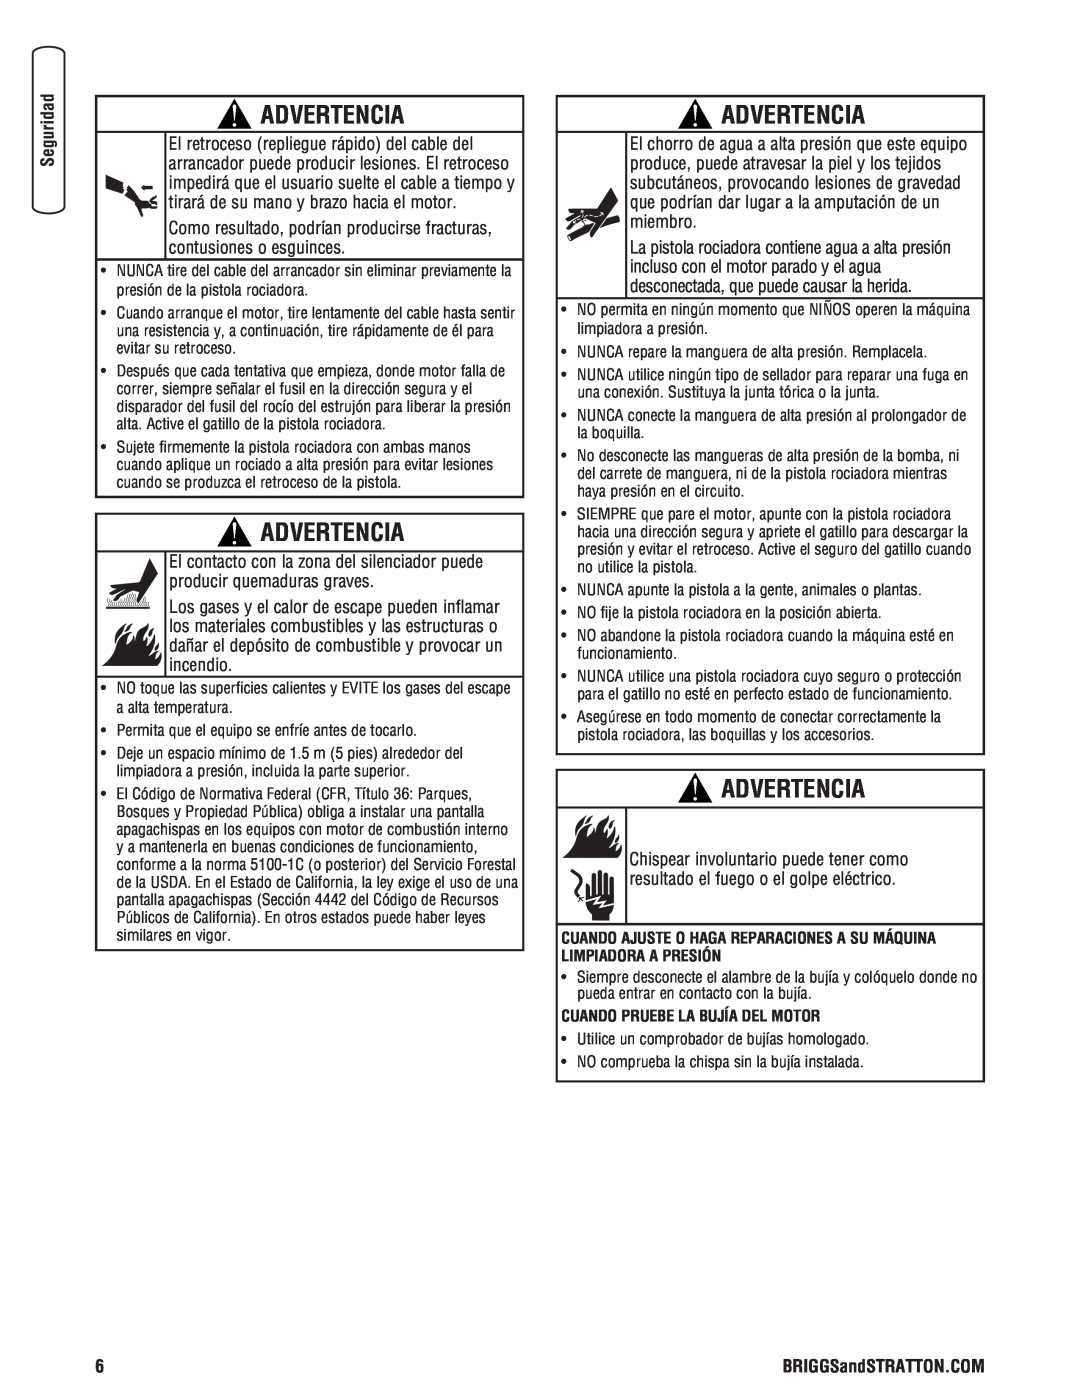 Briggs & Stratton 020364-0 manual Advertencia, Cuando Pruebe La Bujía Del Motor 